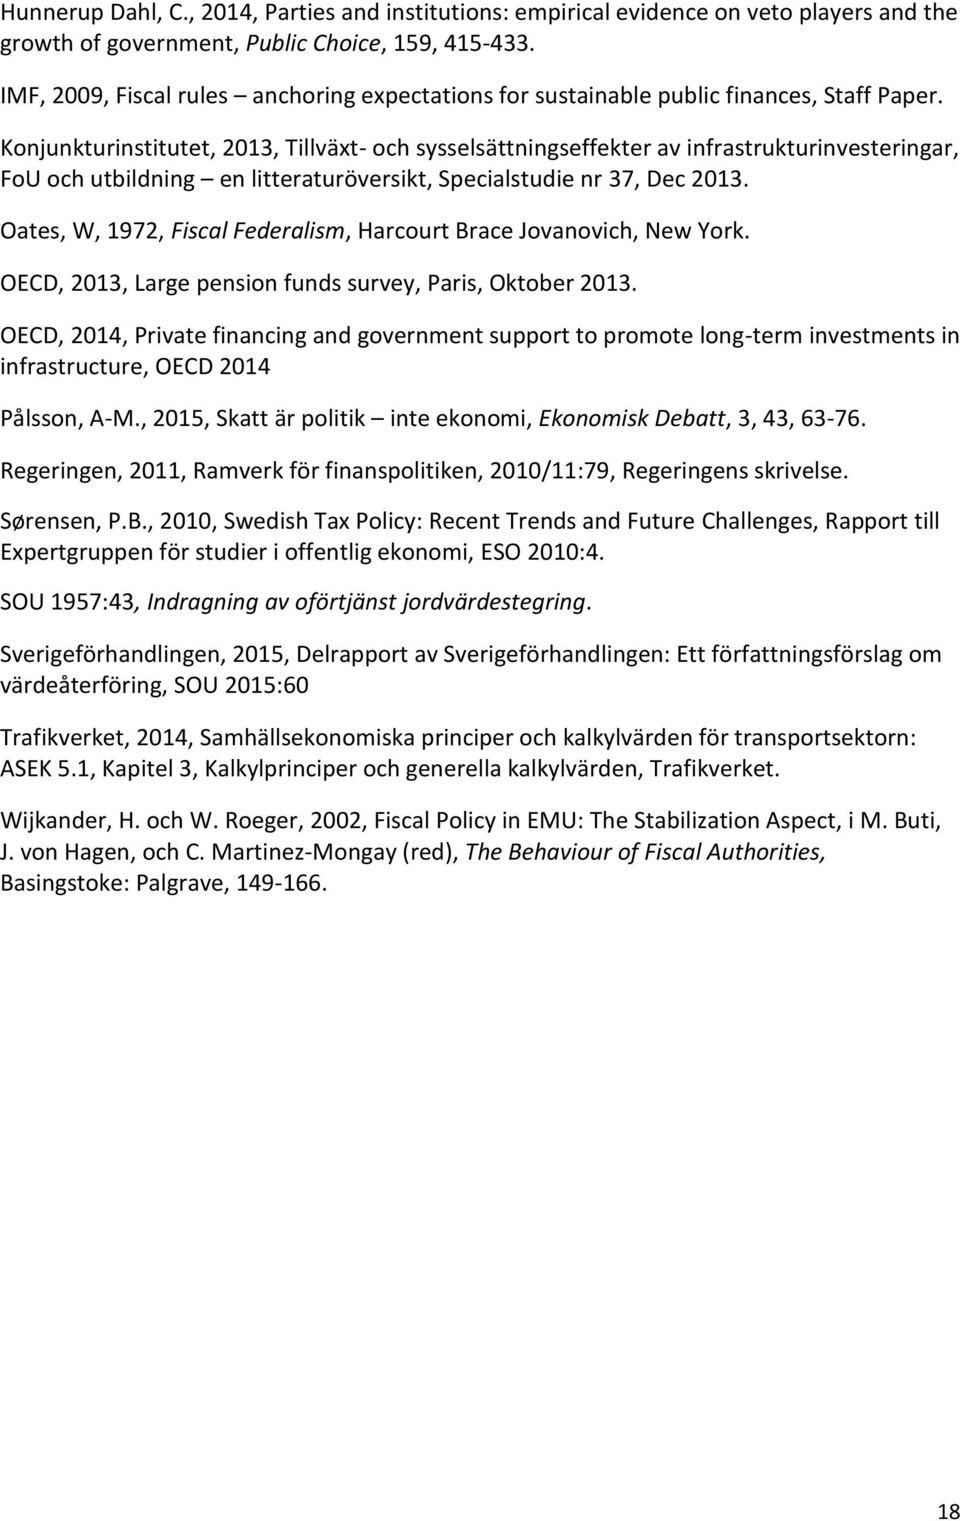 Konjunkturinstitutet, 2013, Tillväxt- och sysselsättningseffekter av infrastrukturinvesteringar, FoU och utbildning en litteraturöversikt, Specialstudie nr 37, Dec 2013.